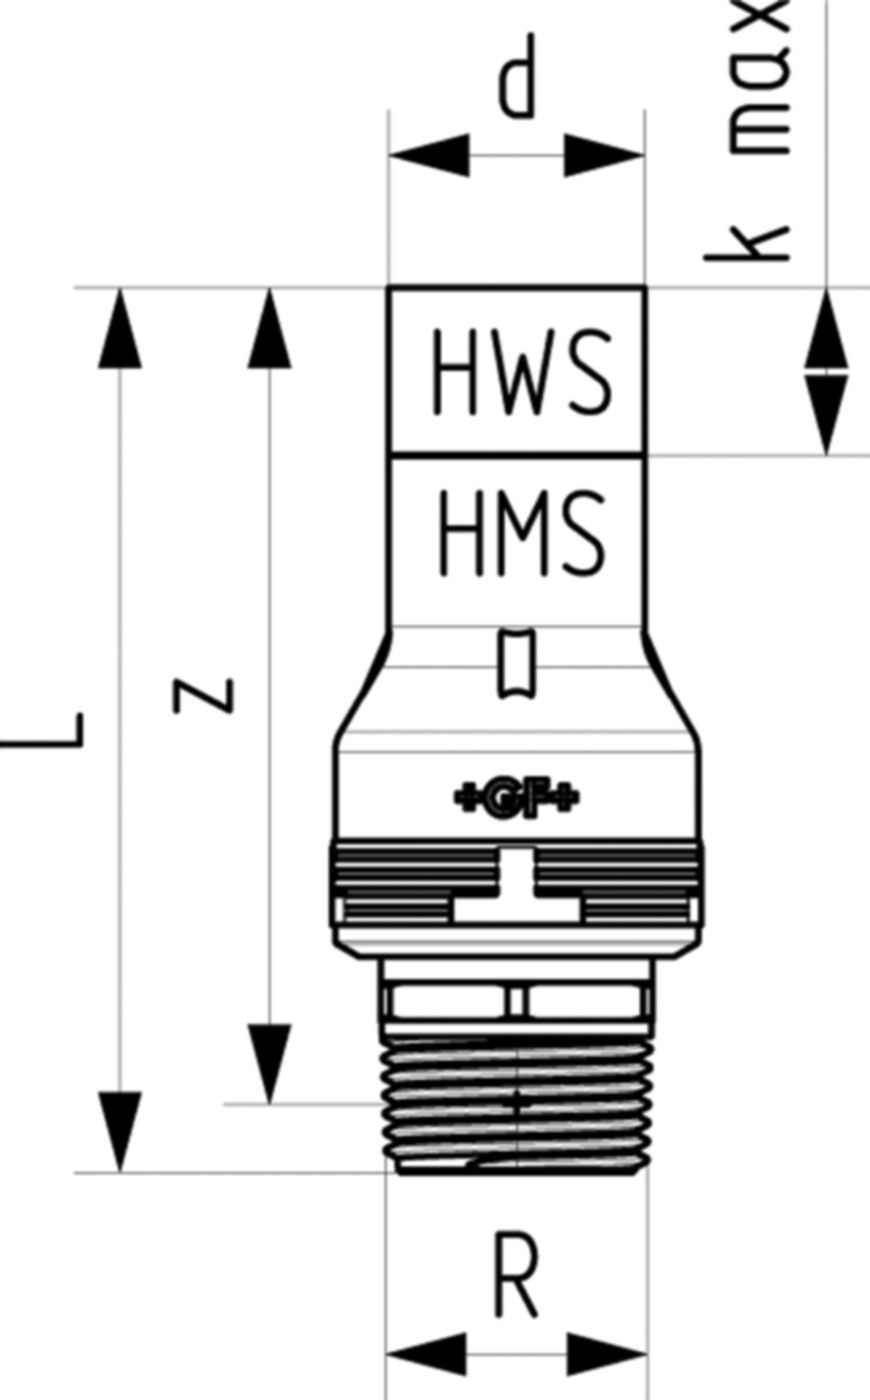 Übergang mit Aussengewinde 6214 20mm - 1/2" 761 069 667 (761 069 386) - GF Instaflex-HWS-Schweisssystem